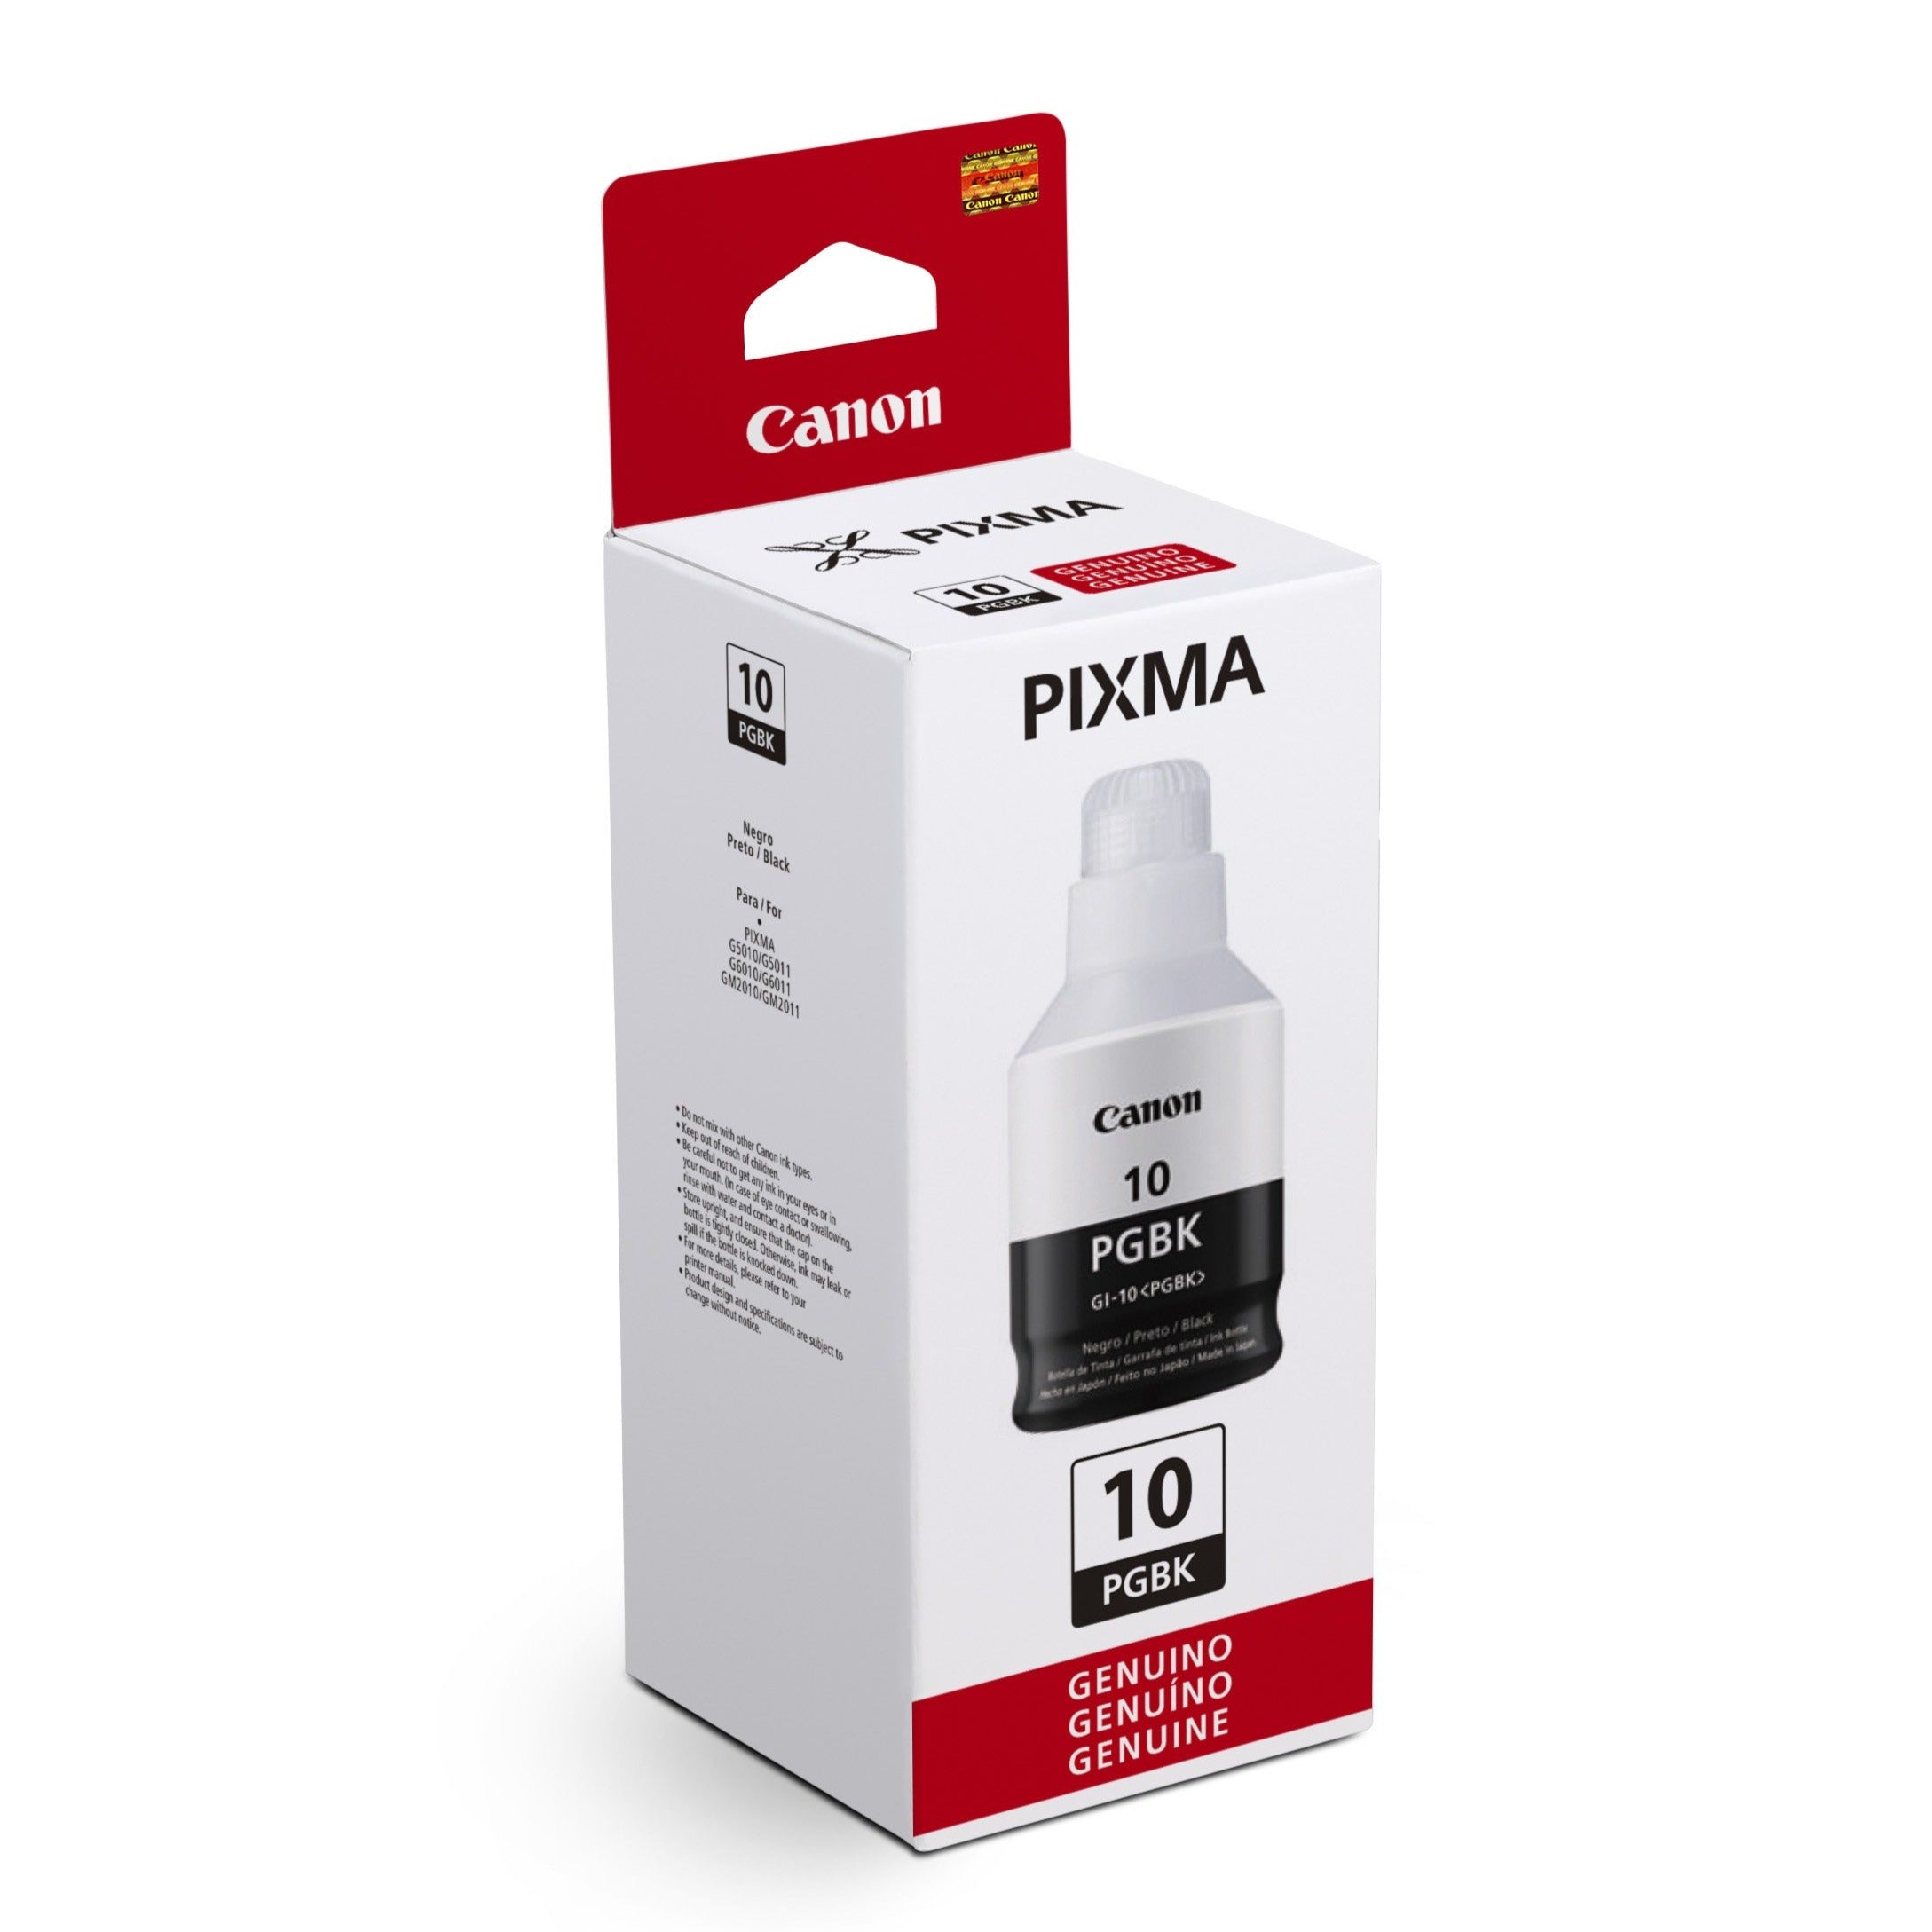 Impresora Canon PIXMA G2170  Sistema de Tanque de Tinta - Multimax